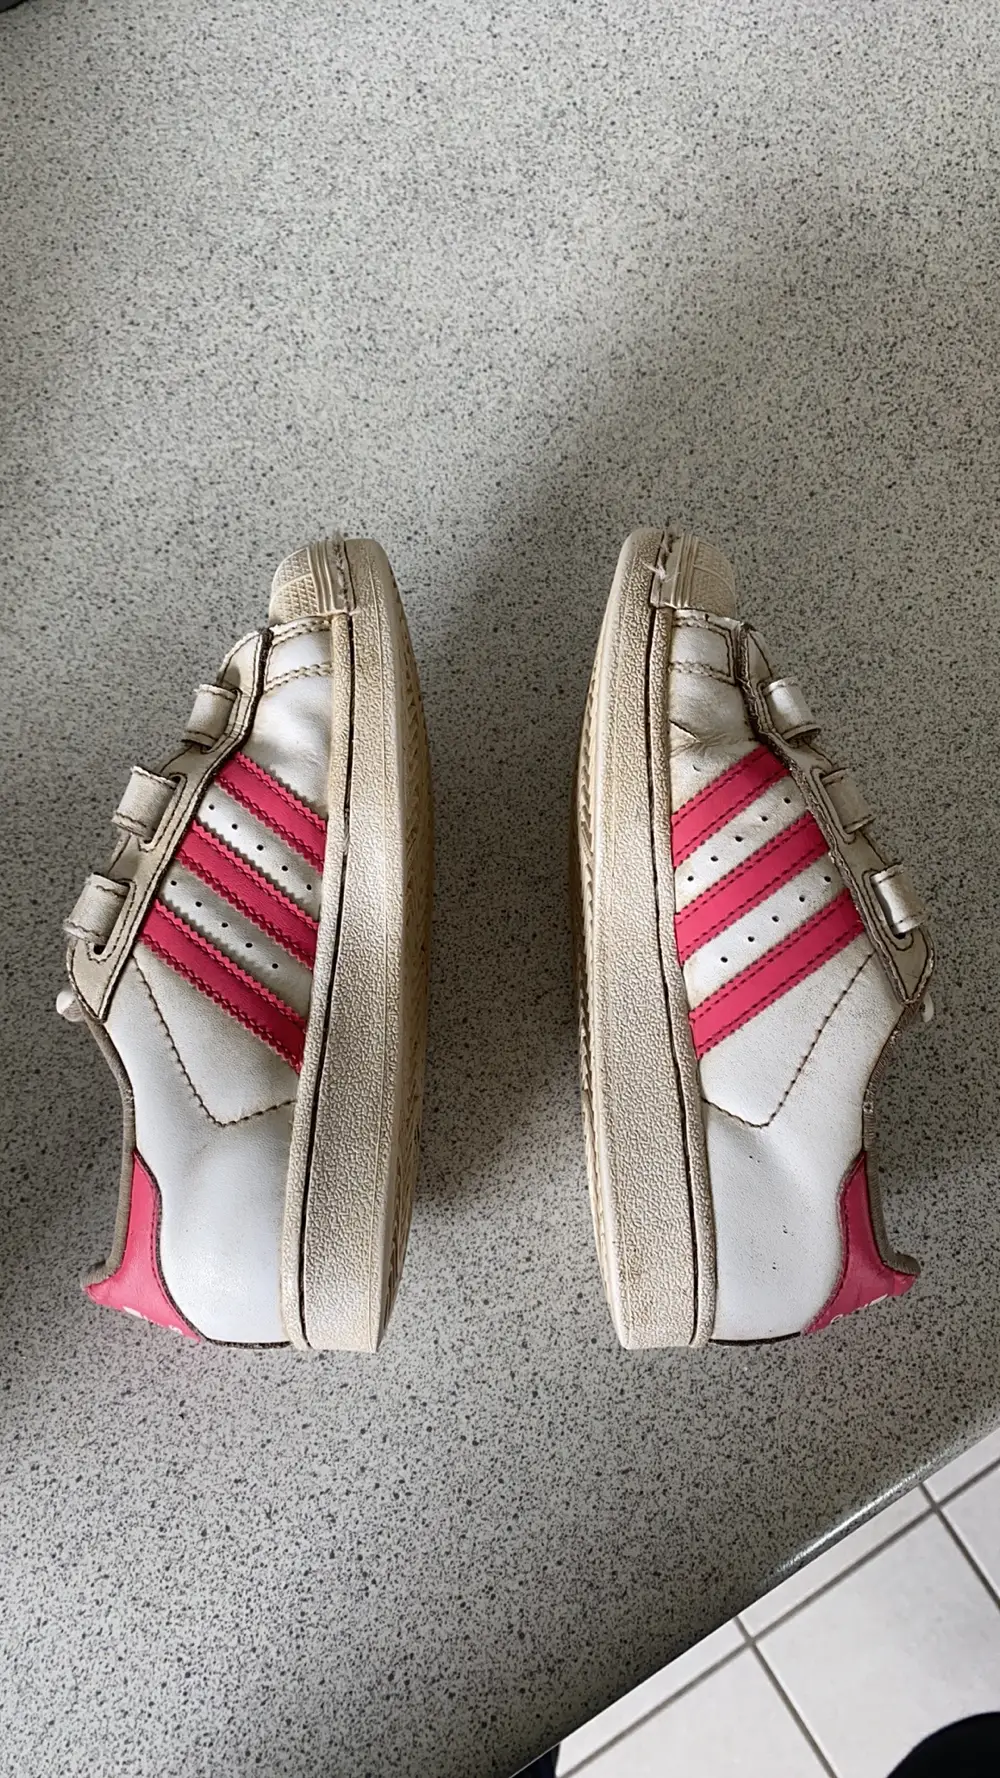 adidas Superstar sneakers hvid / pink